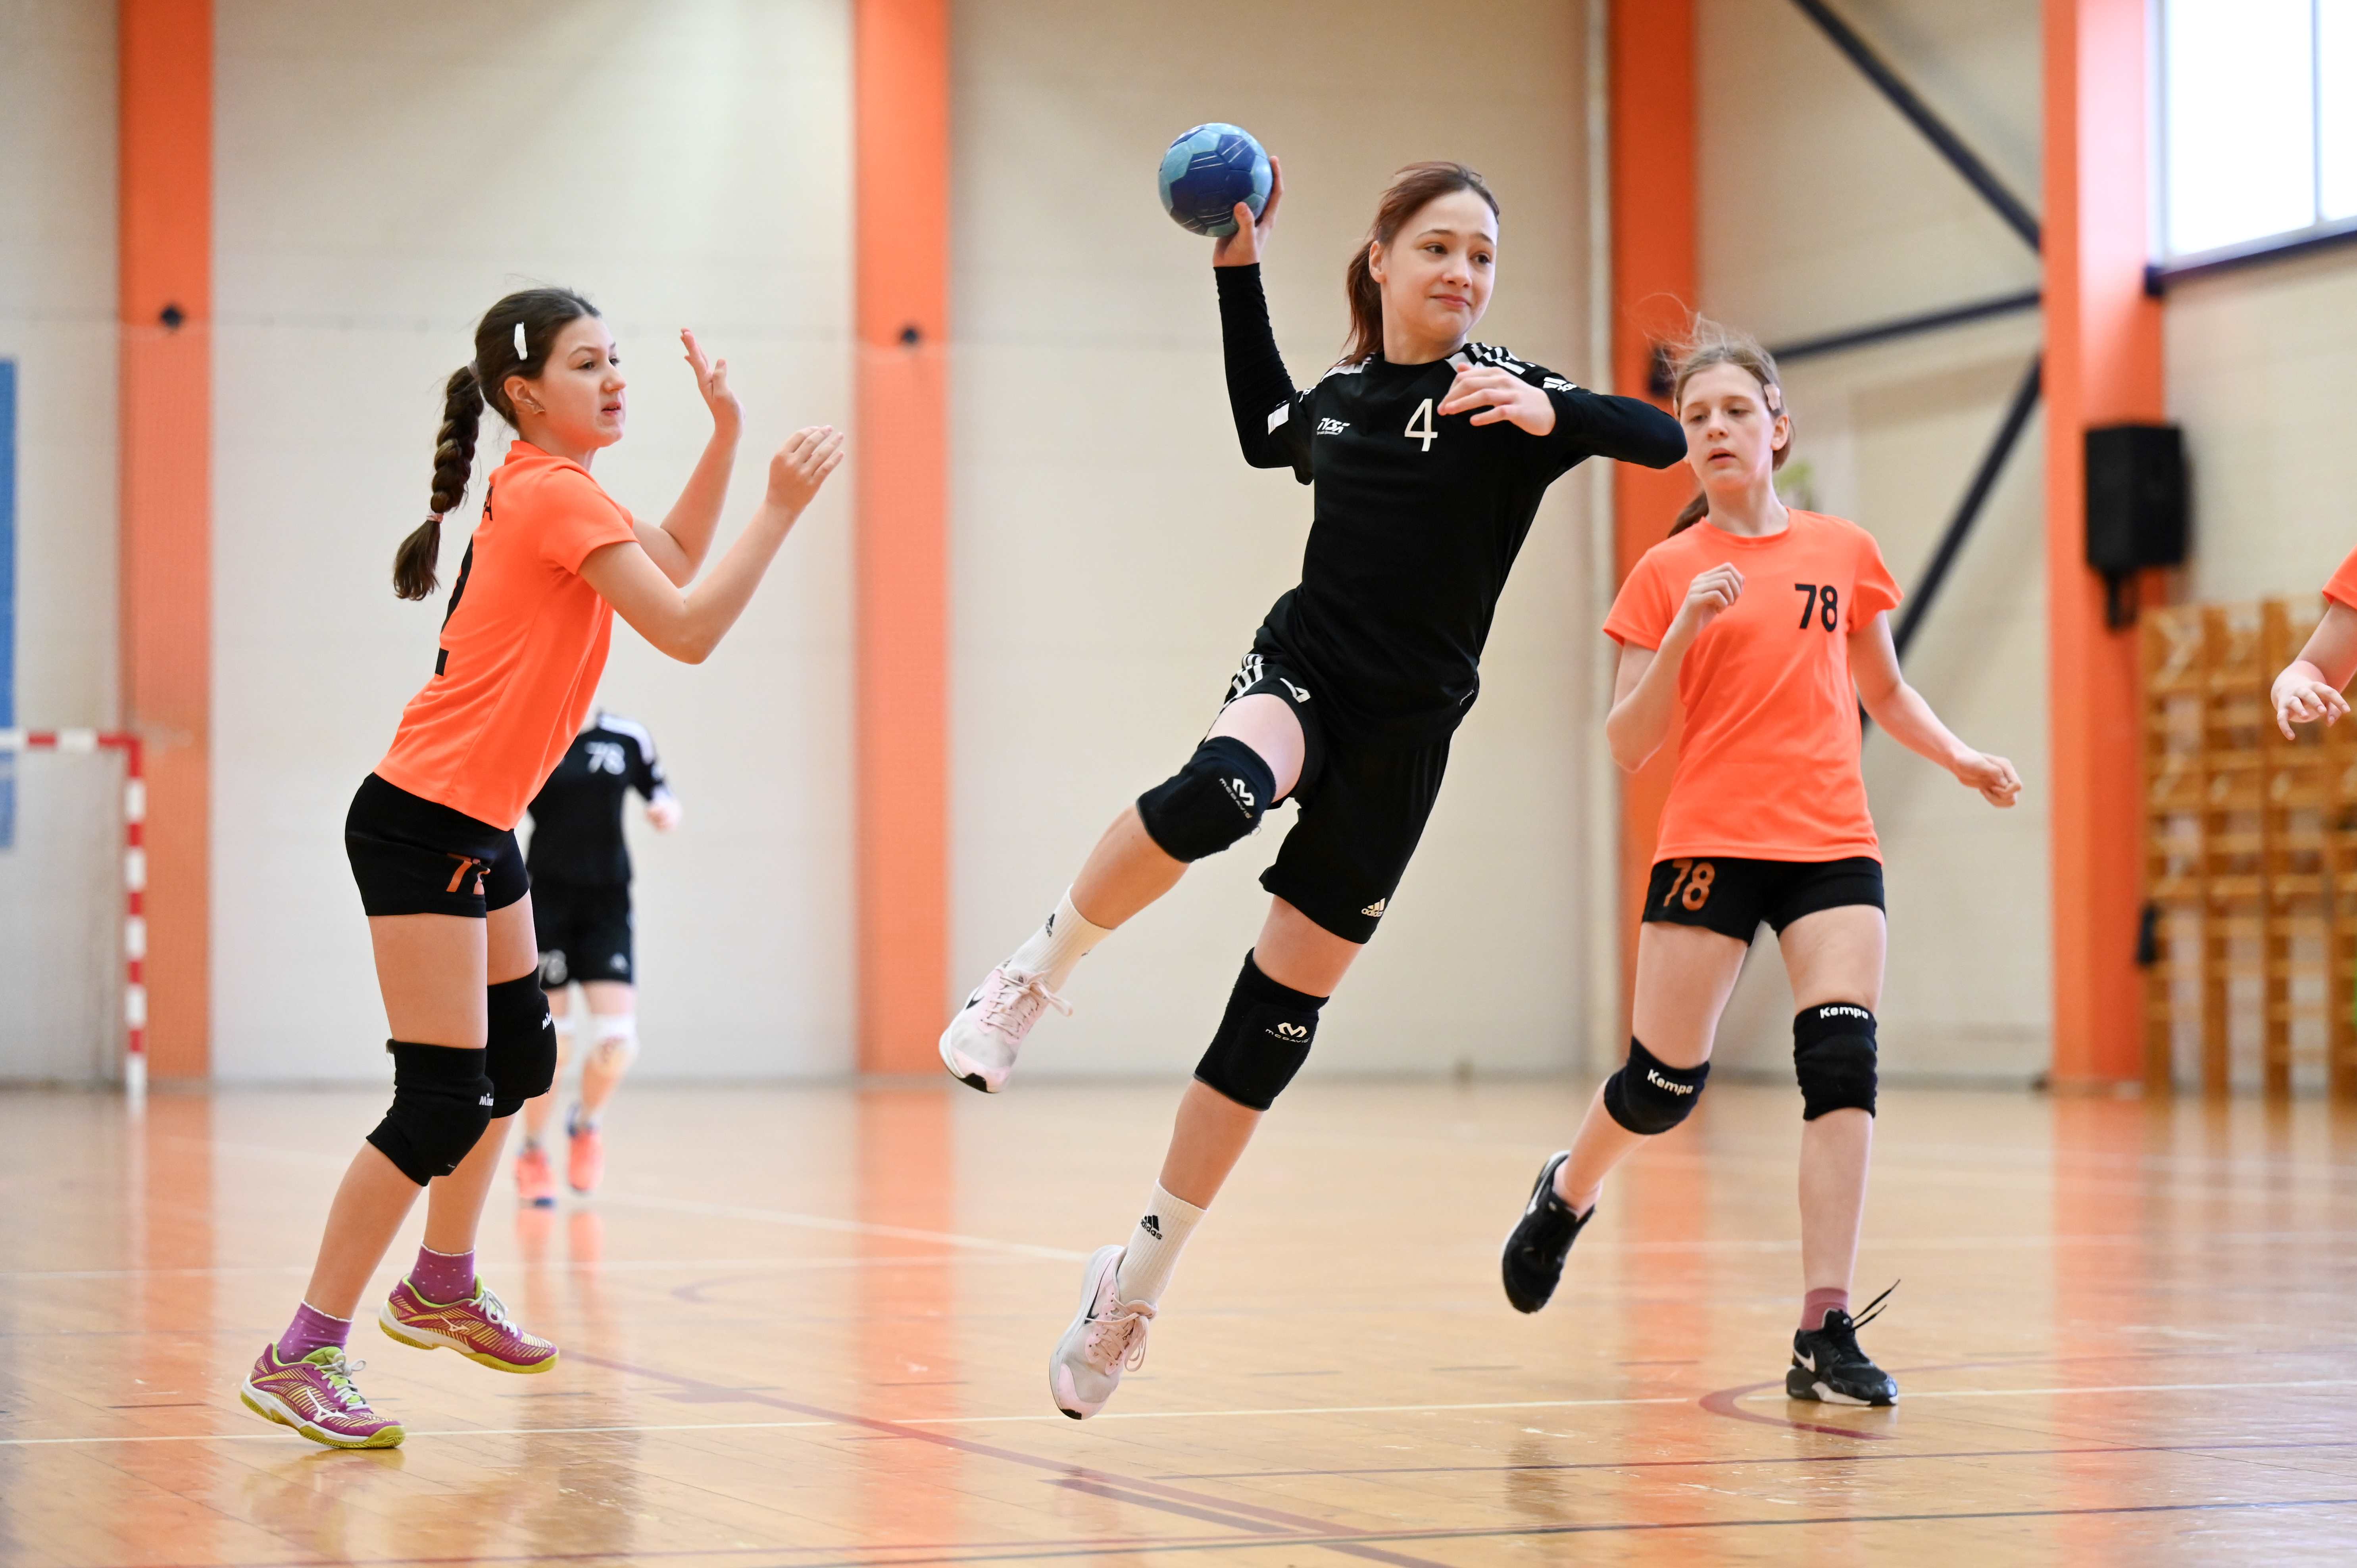 Nädalavahetusel selgub Tapal tütarlaste D2 vanuseklassi meister 2024 Eesti meistrivõistlustel käsipallis